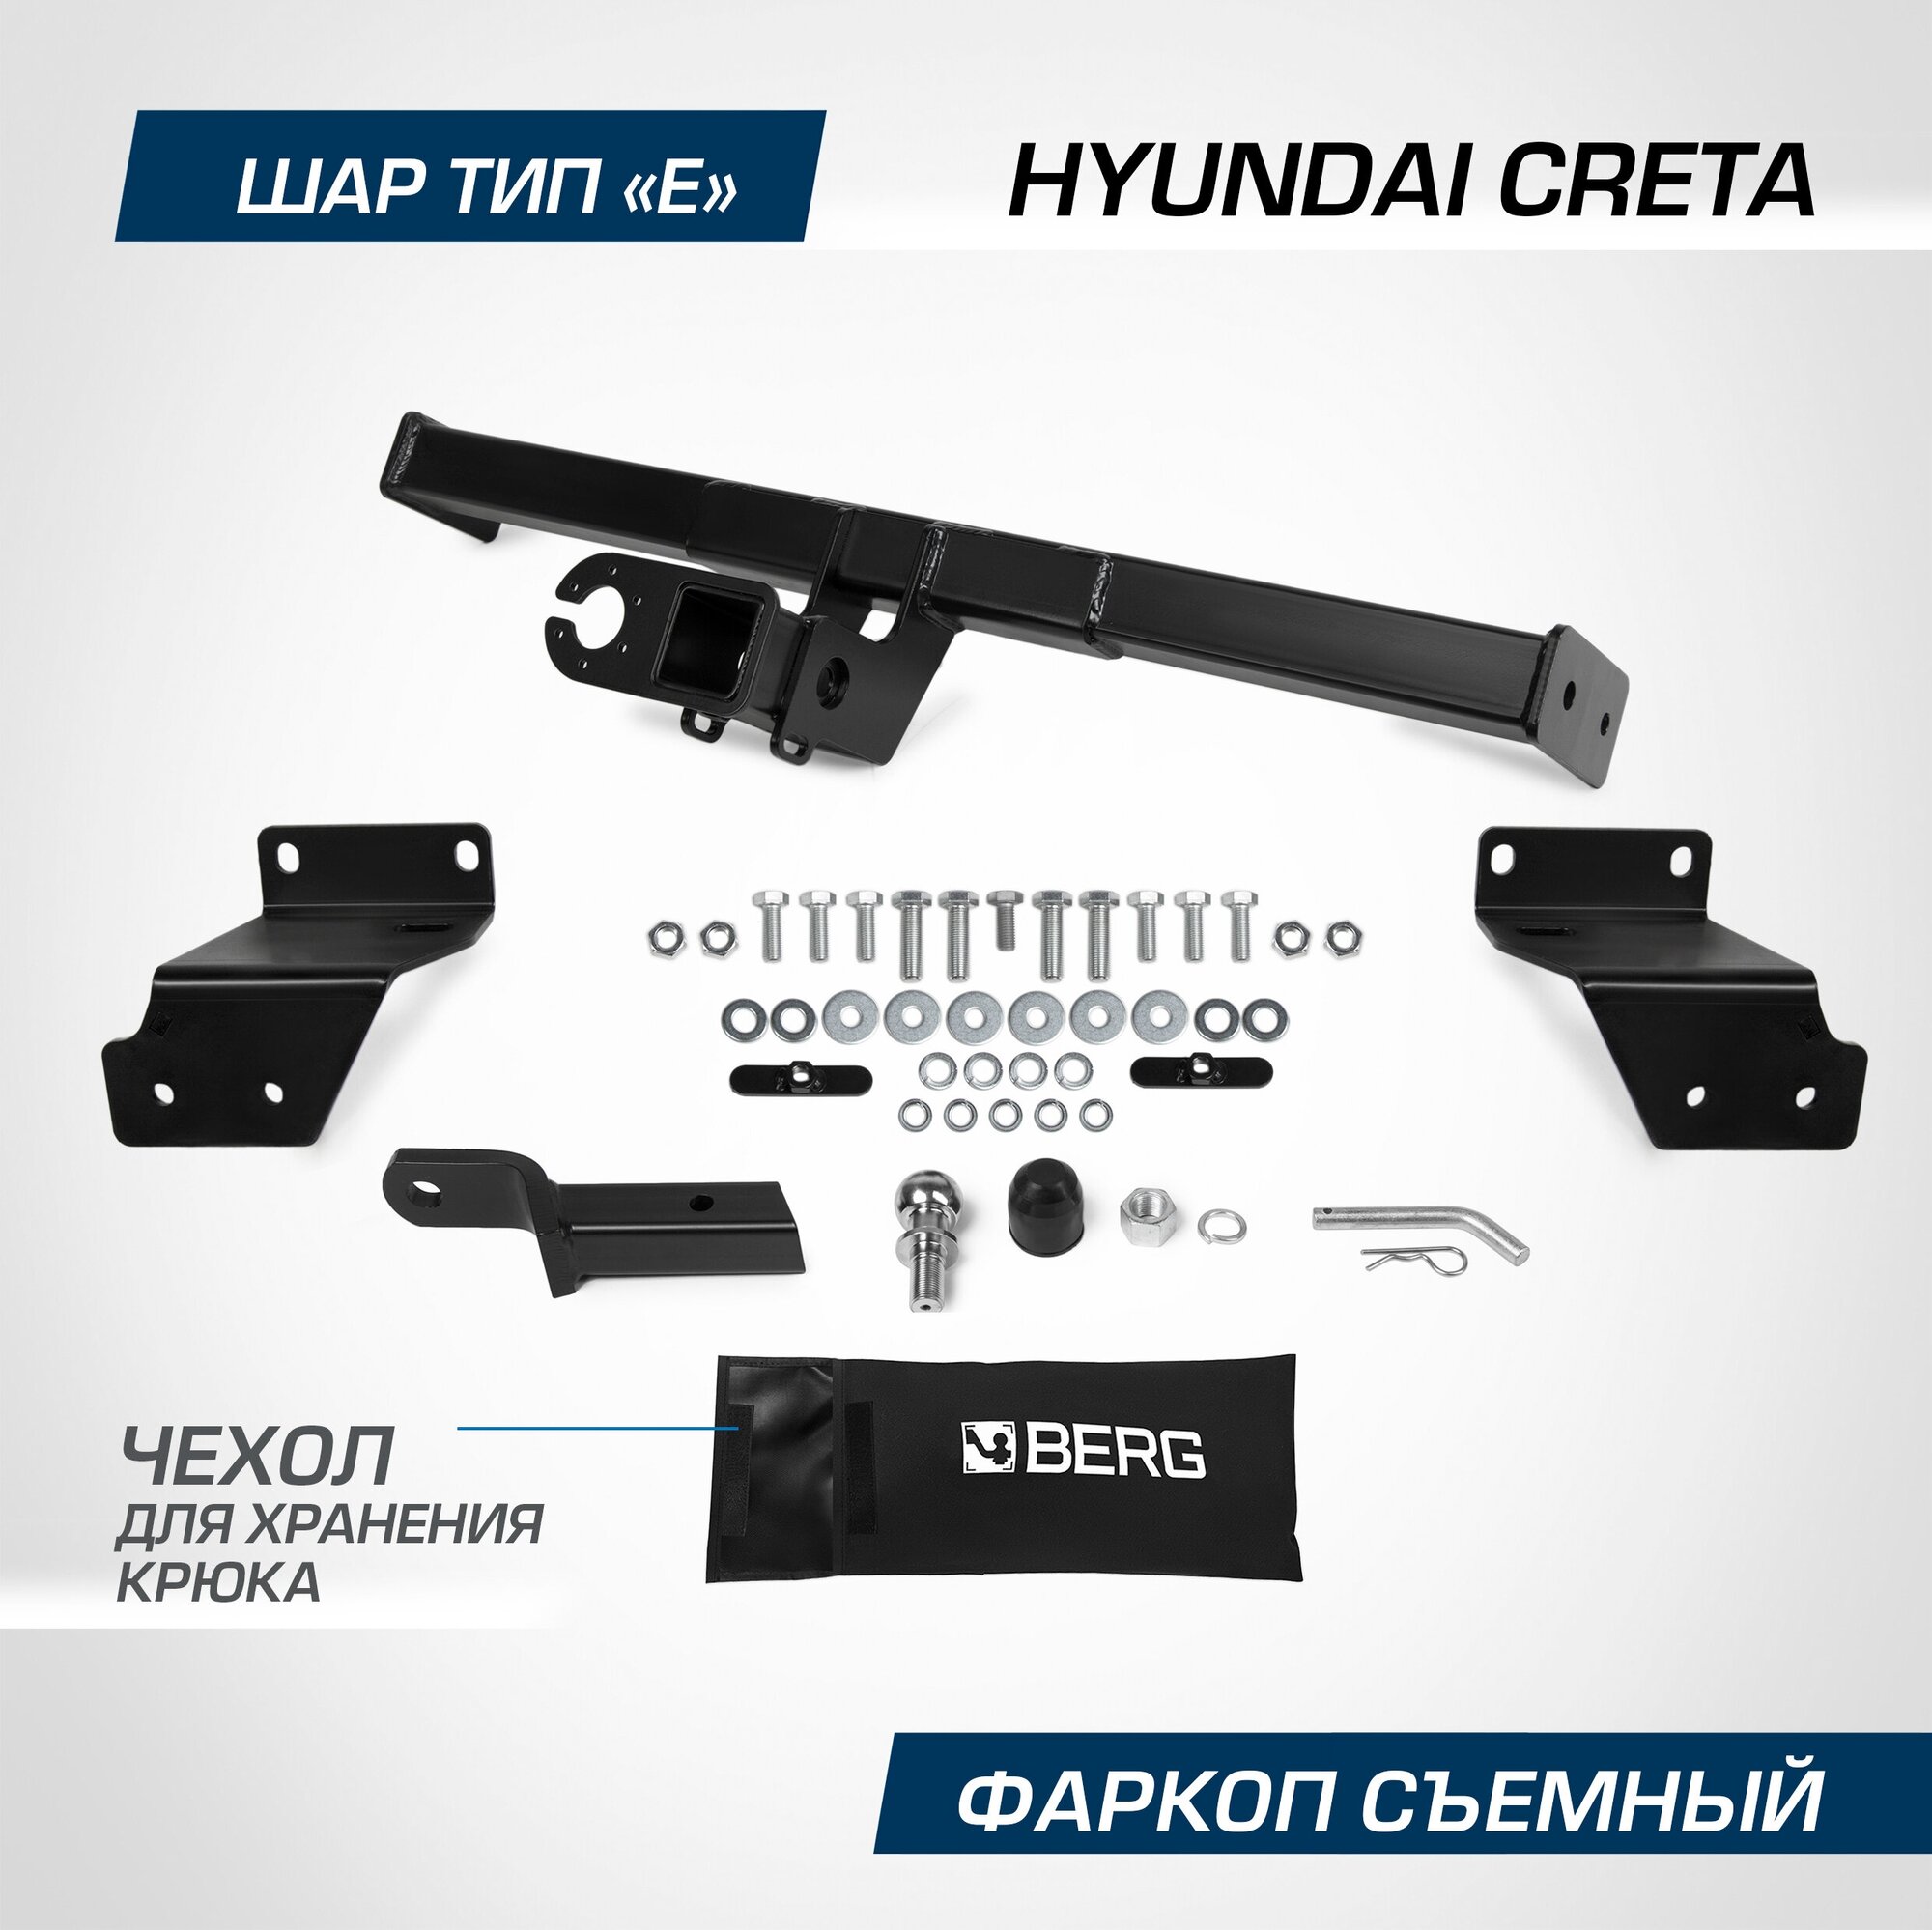 Фаркоп под квадрат Berg для Hyundai Creta (Хендай Крета) I II 2016-2021 2021-н. в шар E 1300/75 кг F.2312.003